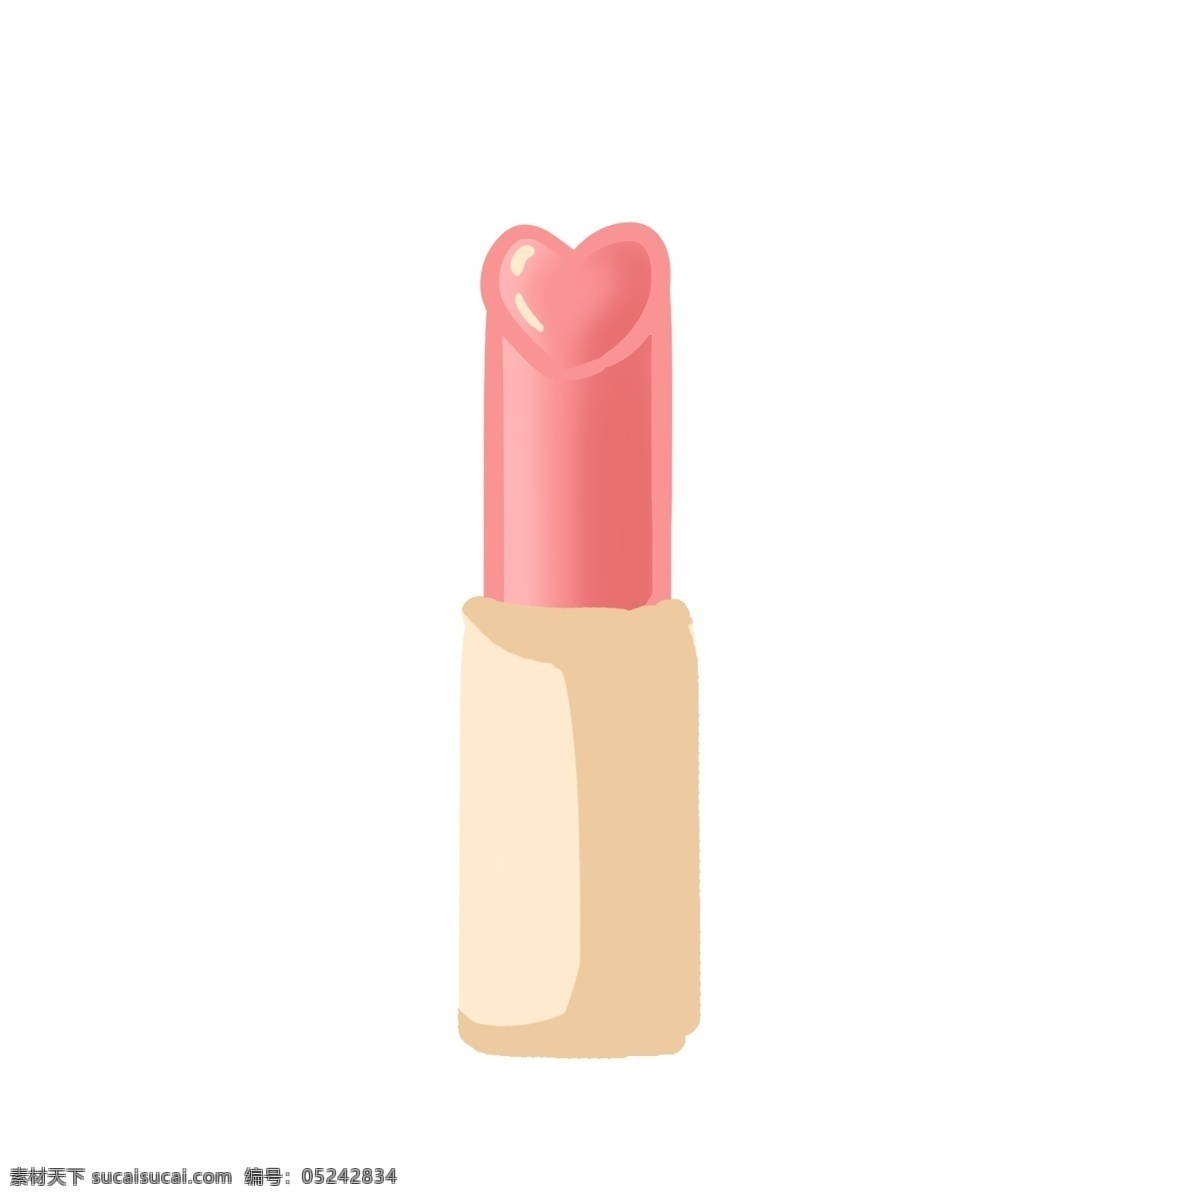 妇女节 粉色 唇膏 爱心 礼物 金色 粉红色 女性 魅力 美丽 魅惑 精致 淡彩 礼品 化妆品 节日祝福